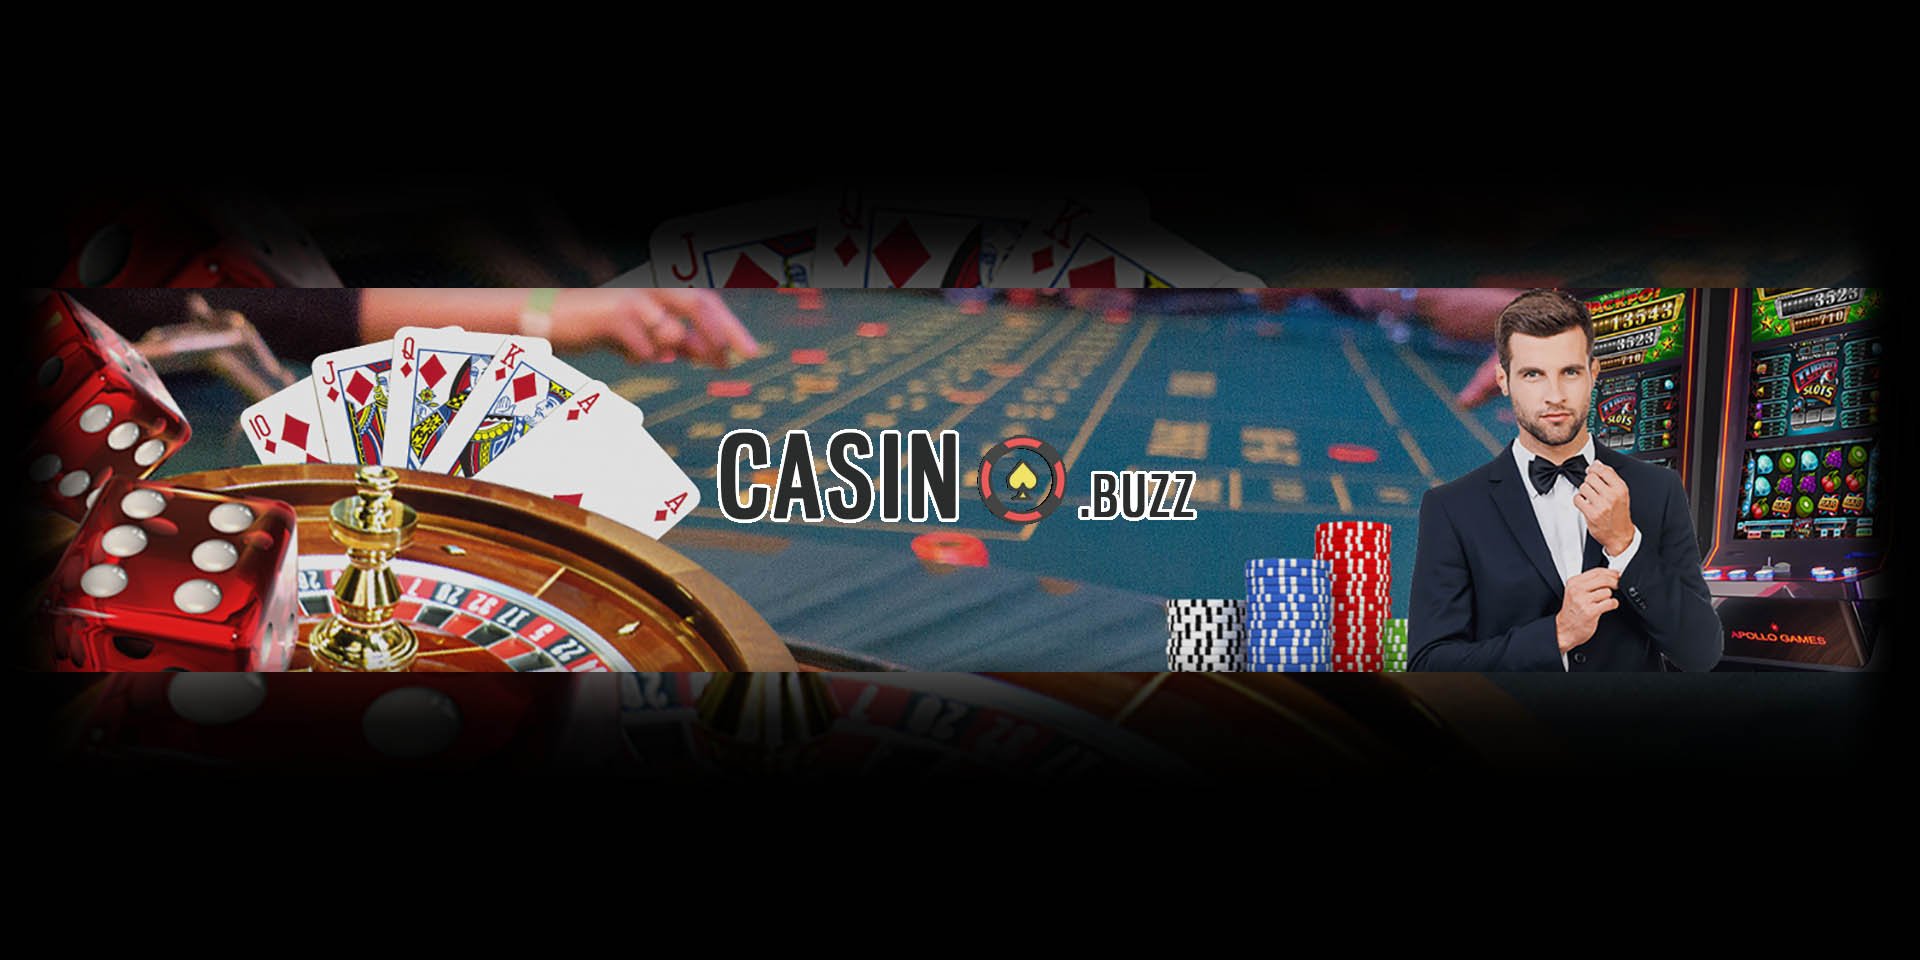 Online casino ratings как играть в палки карты